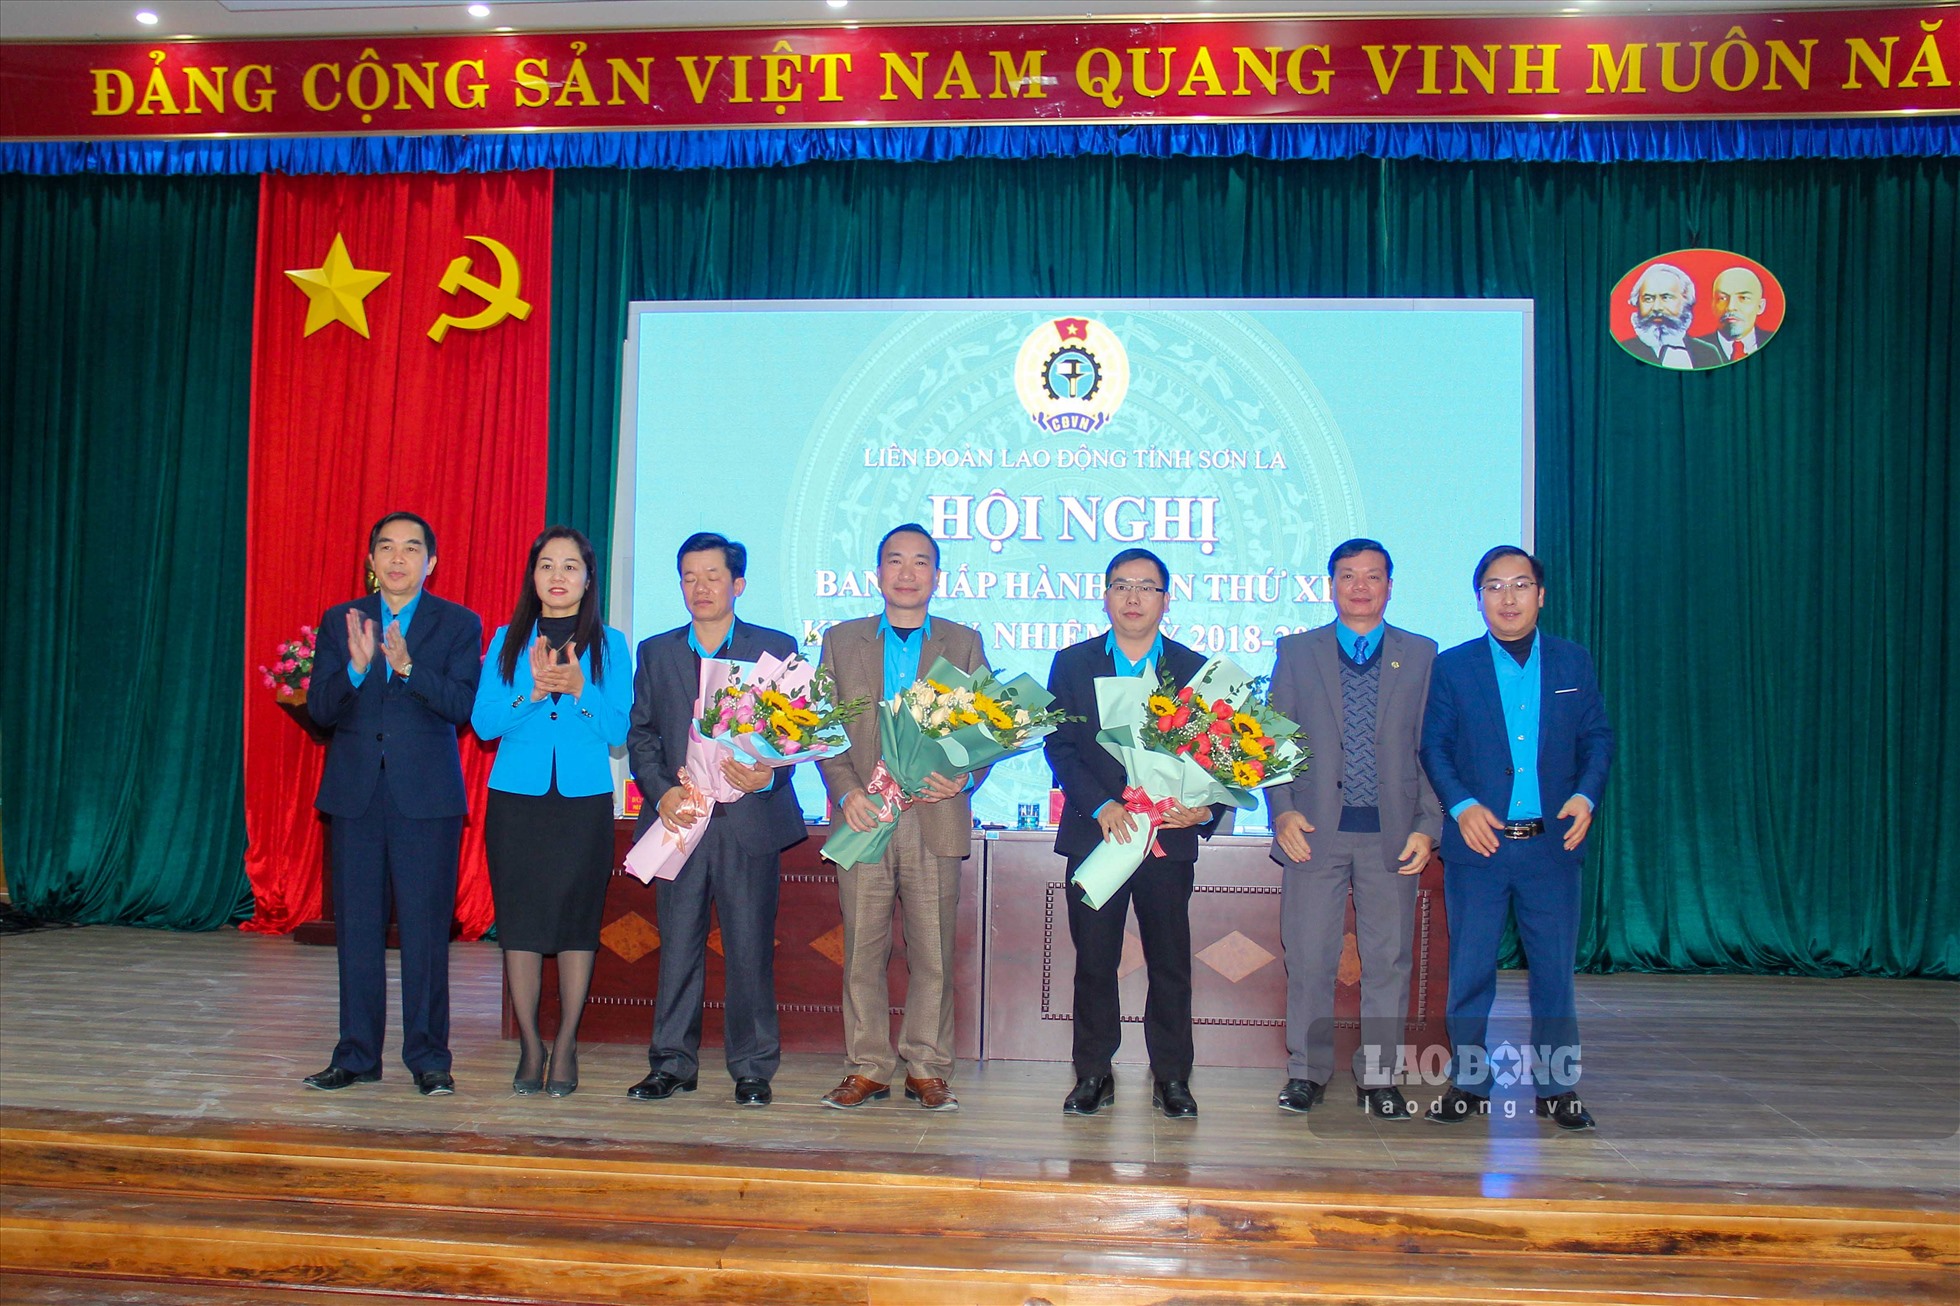 3 đại biểu mới thuộc Ban chấp hành LĐLĐ tỉnh Sơn La nhận hoa chúc mừng.